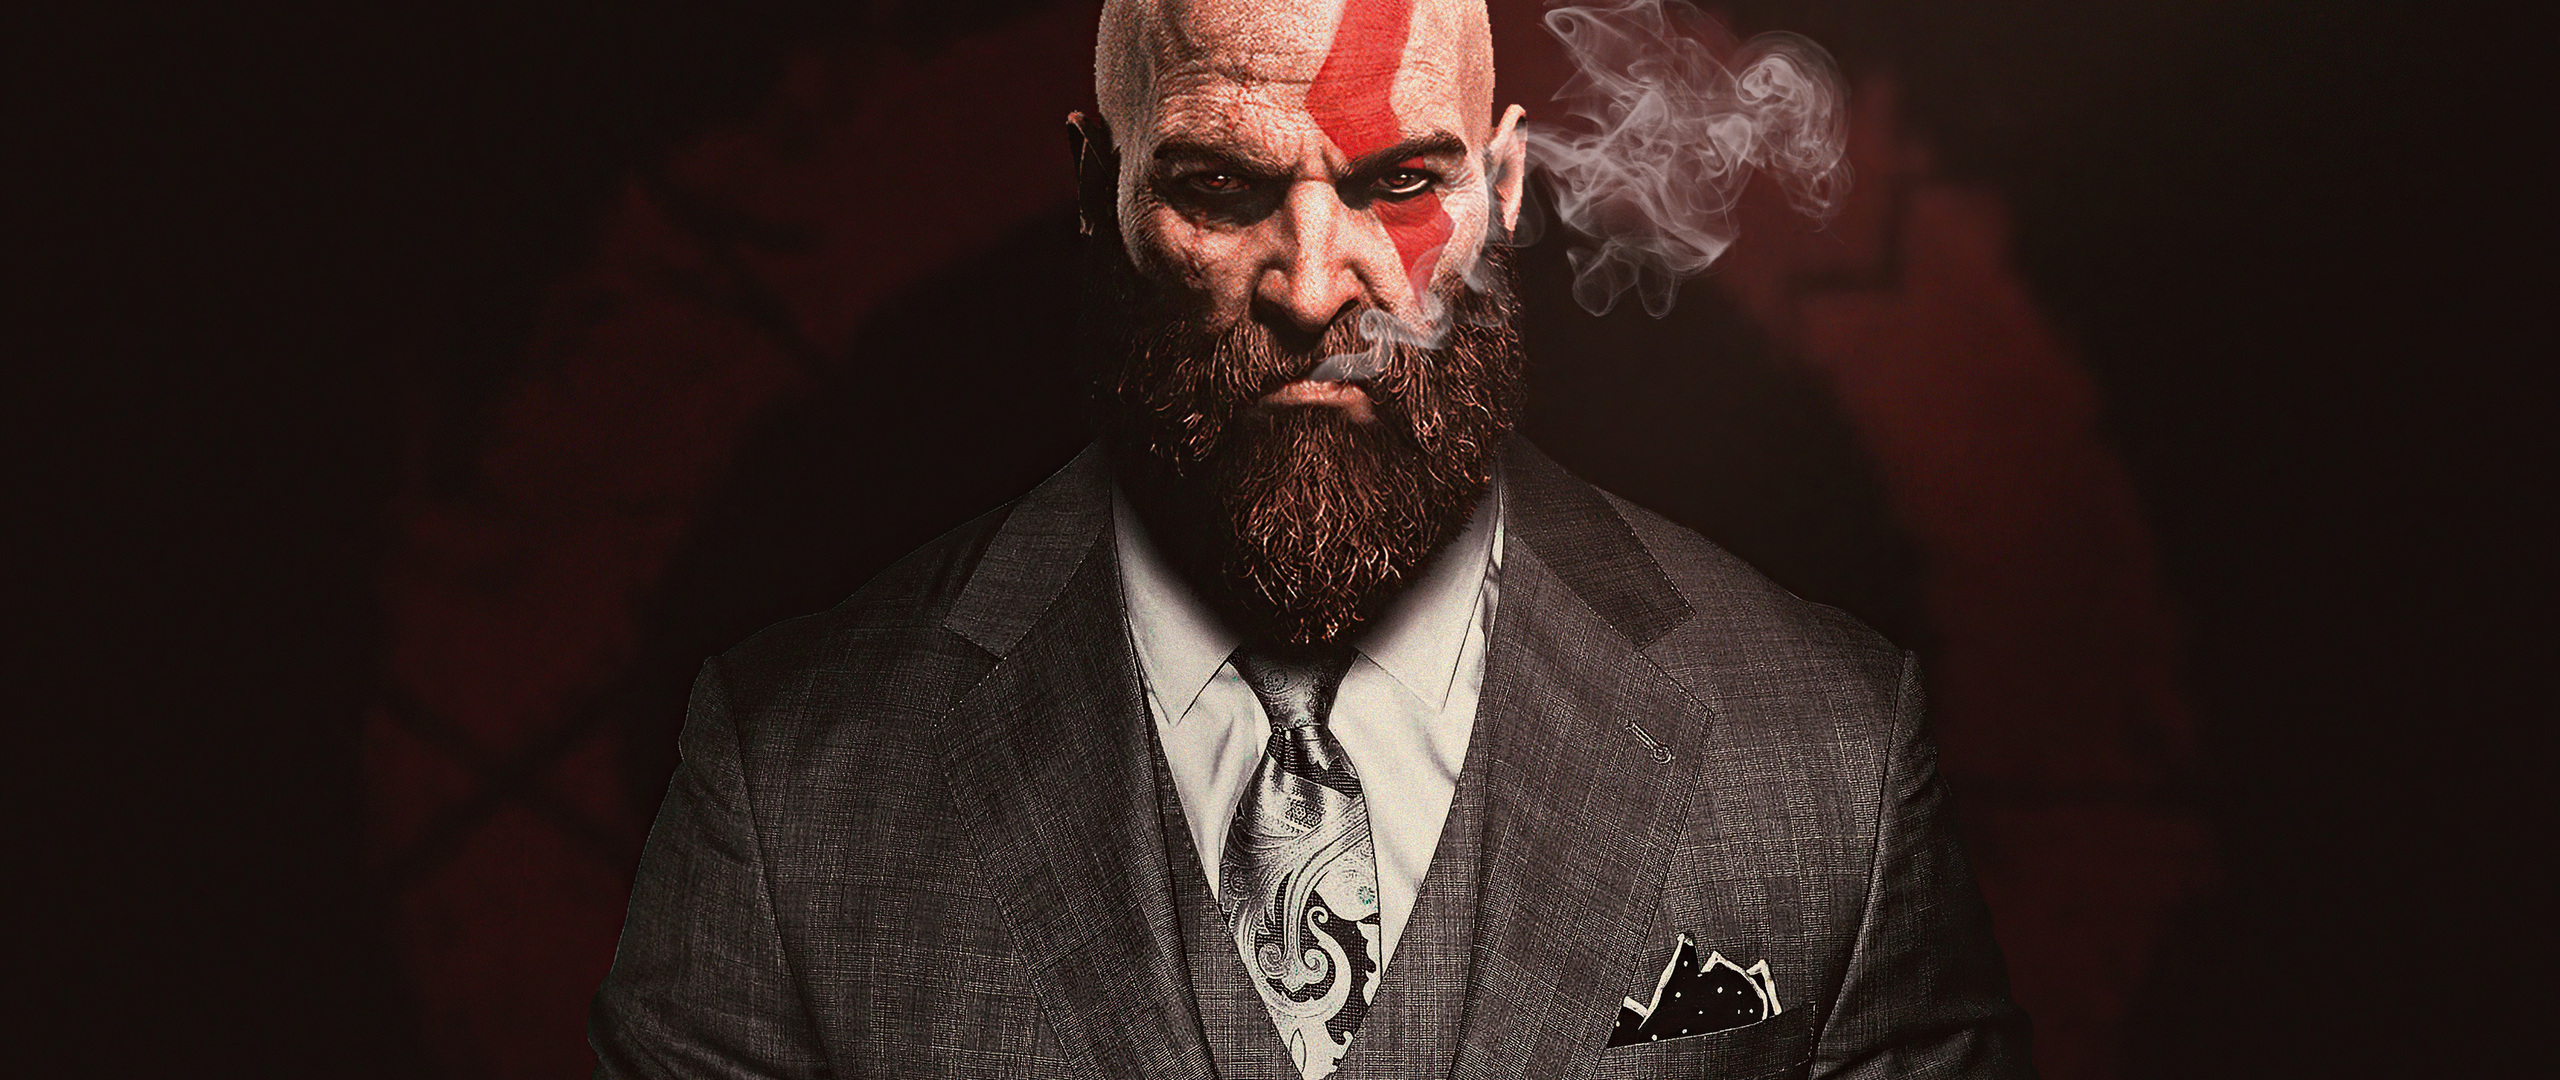 kratos-god-of-war-in-suit-4k-s6.jpg